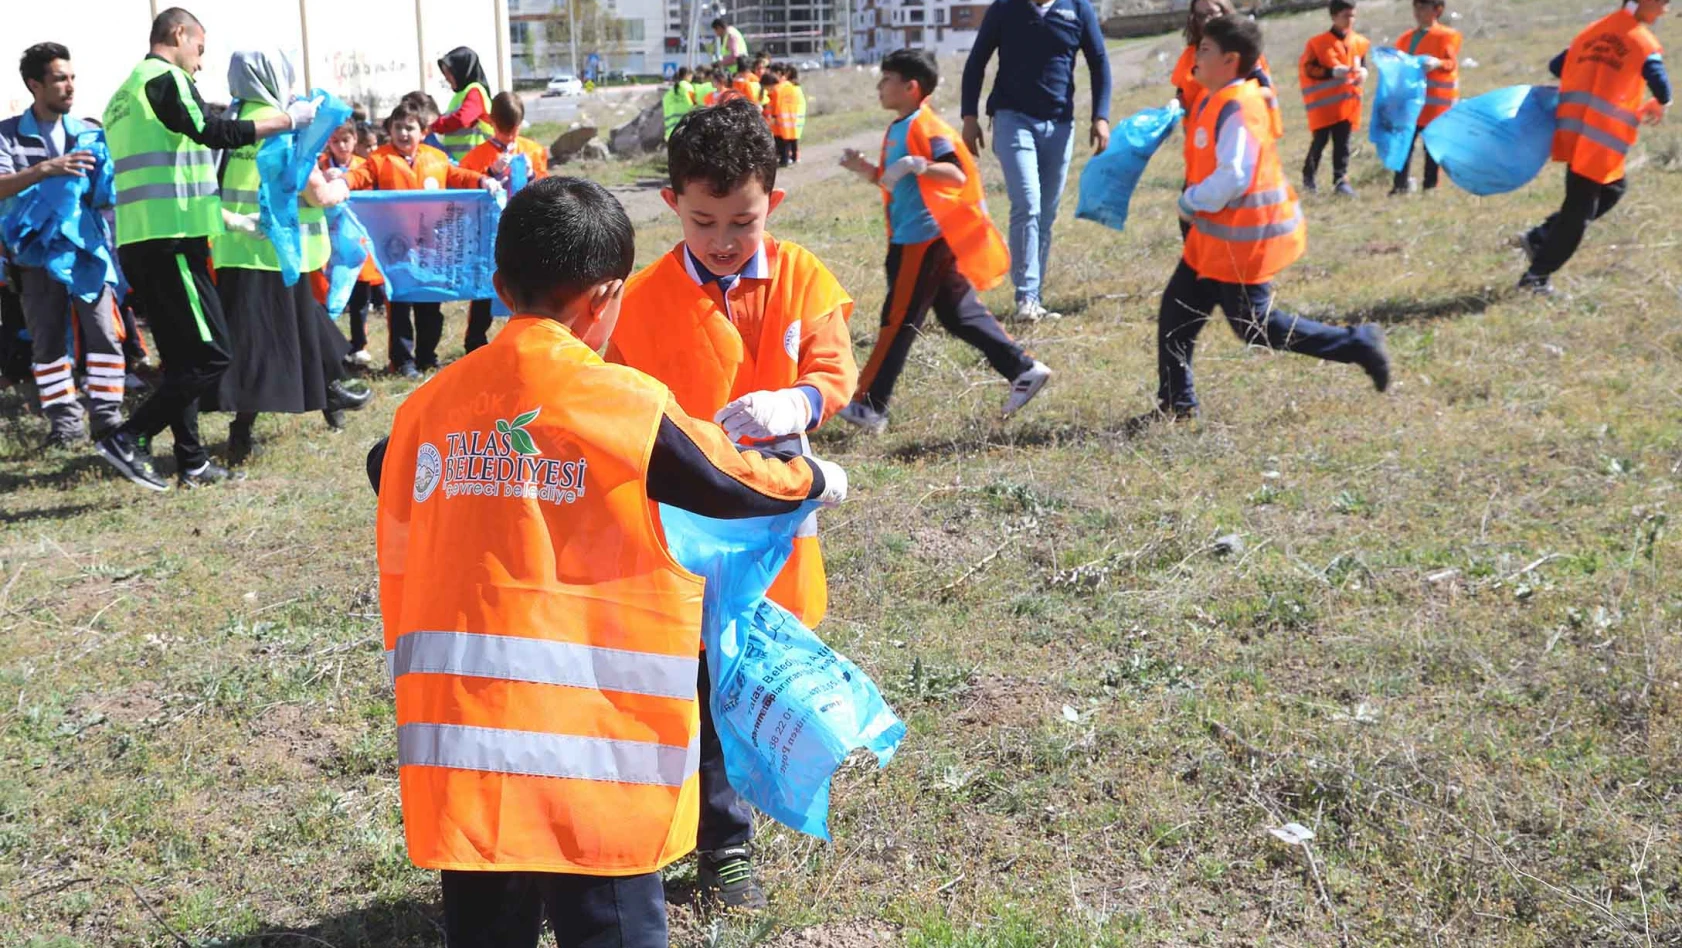 Talas Belediyesi Ve Öğrencilerden Çevre Temizliği 